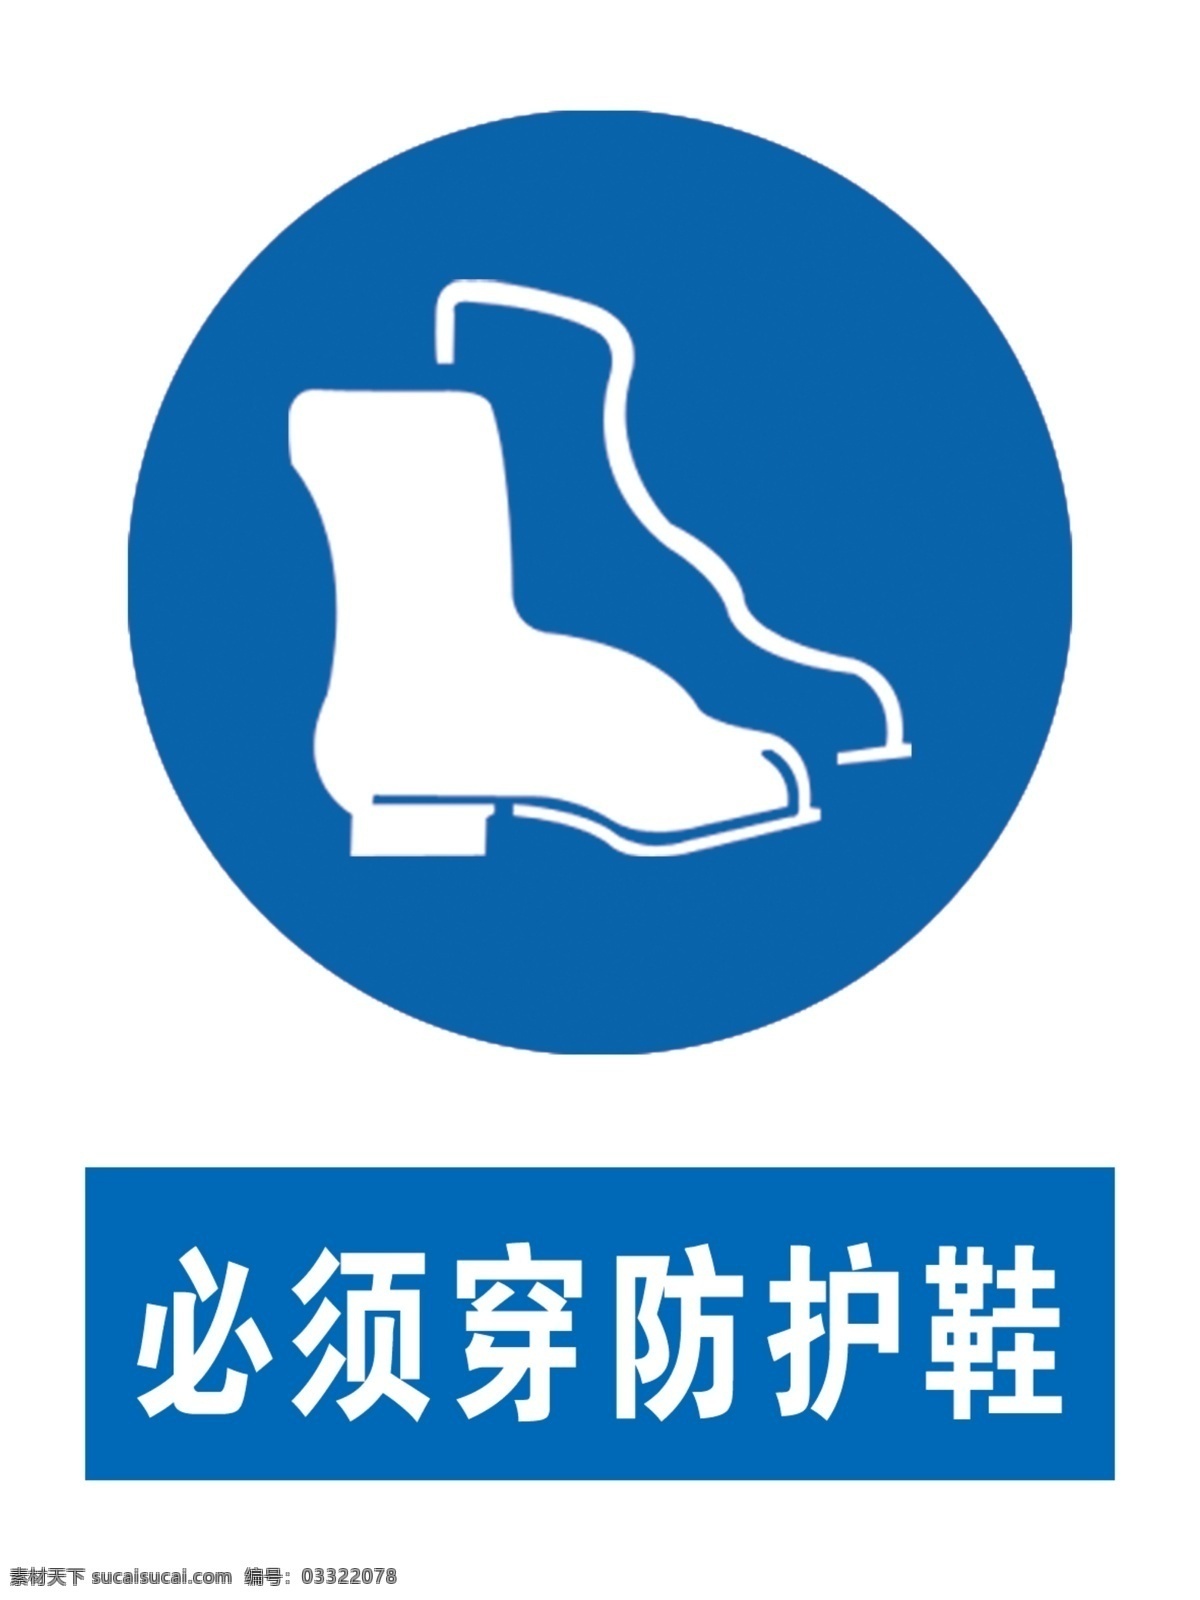 穿工作鞋图片 必须穿防护鞋 防护鞋 穿防护鞋 国标 安全标识 标志图标 公共标识标志